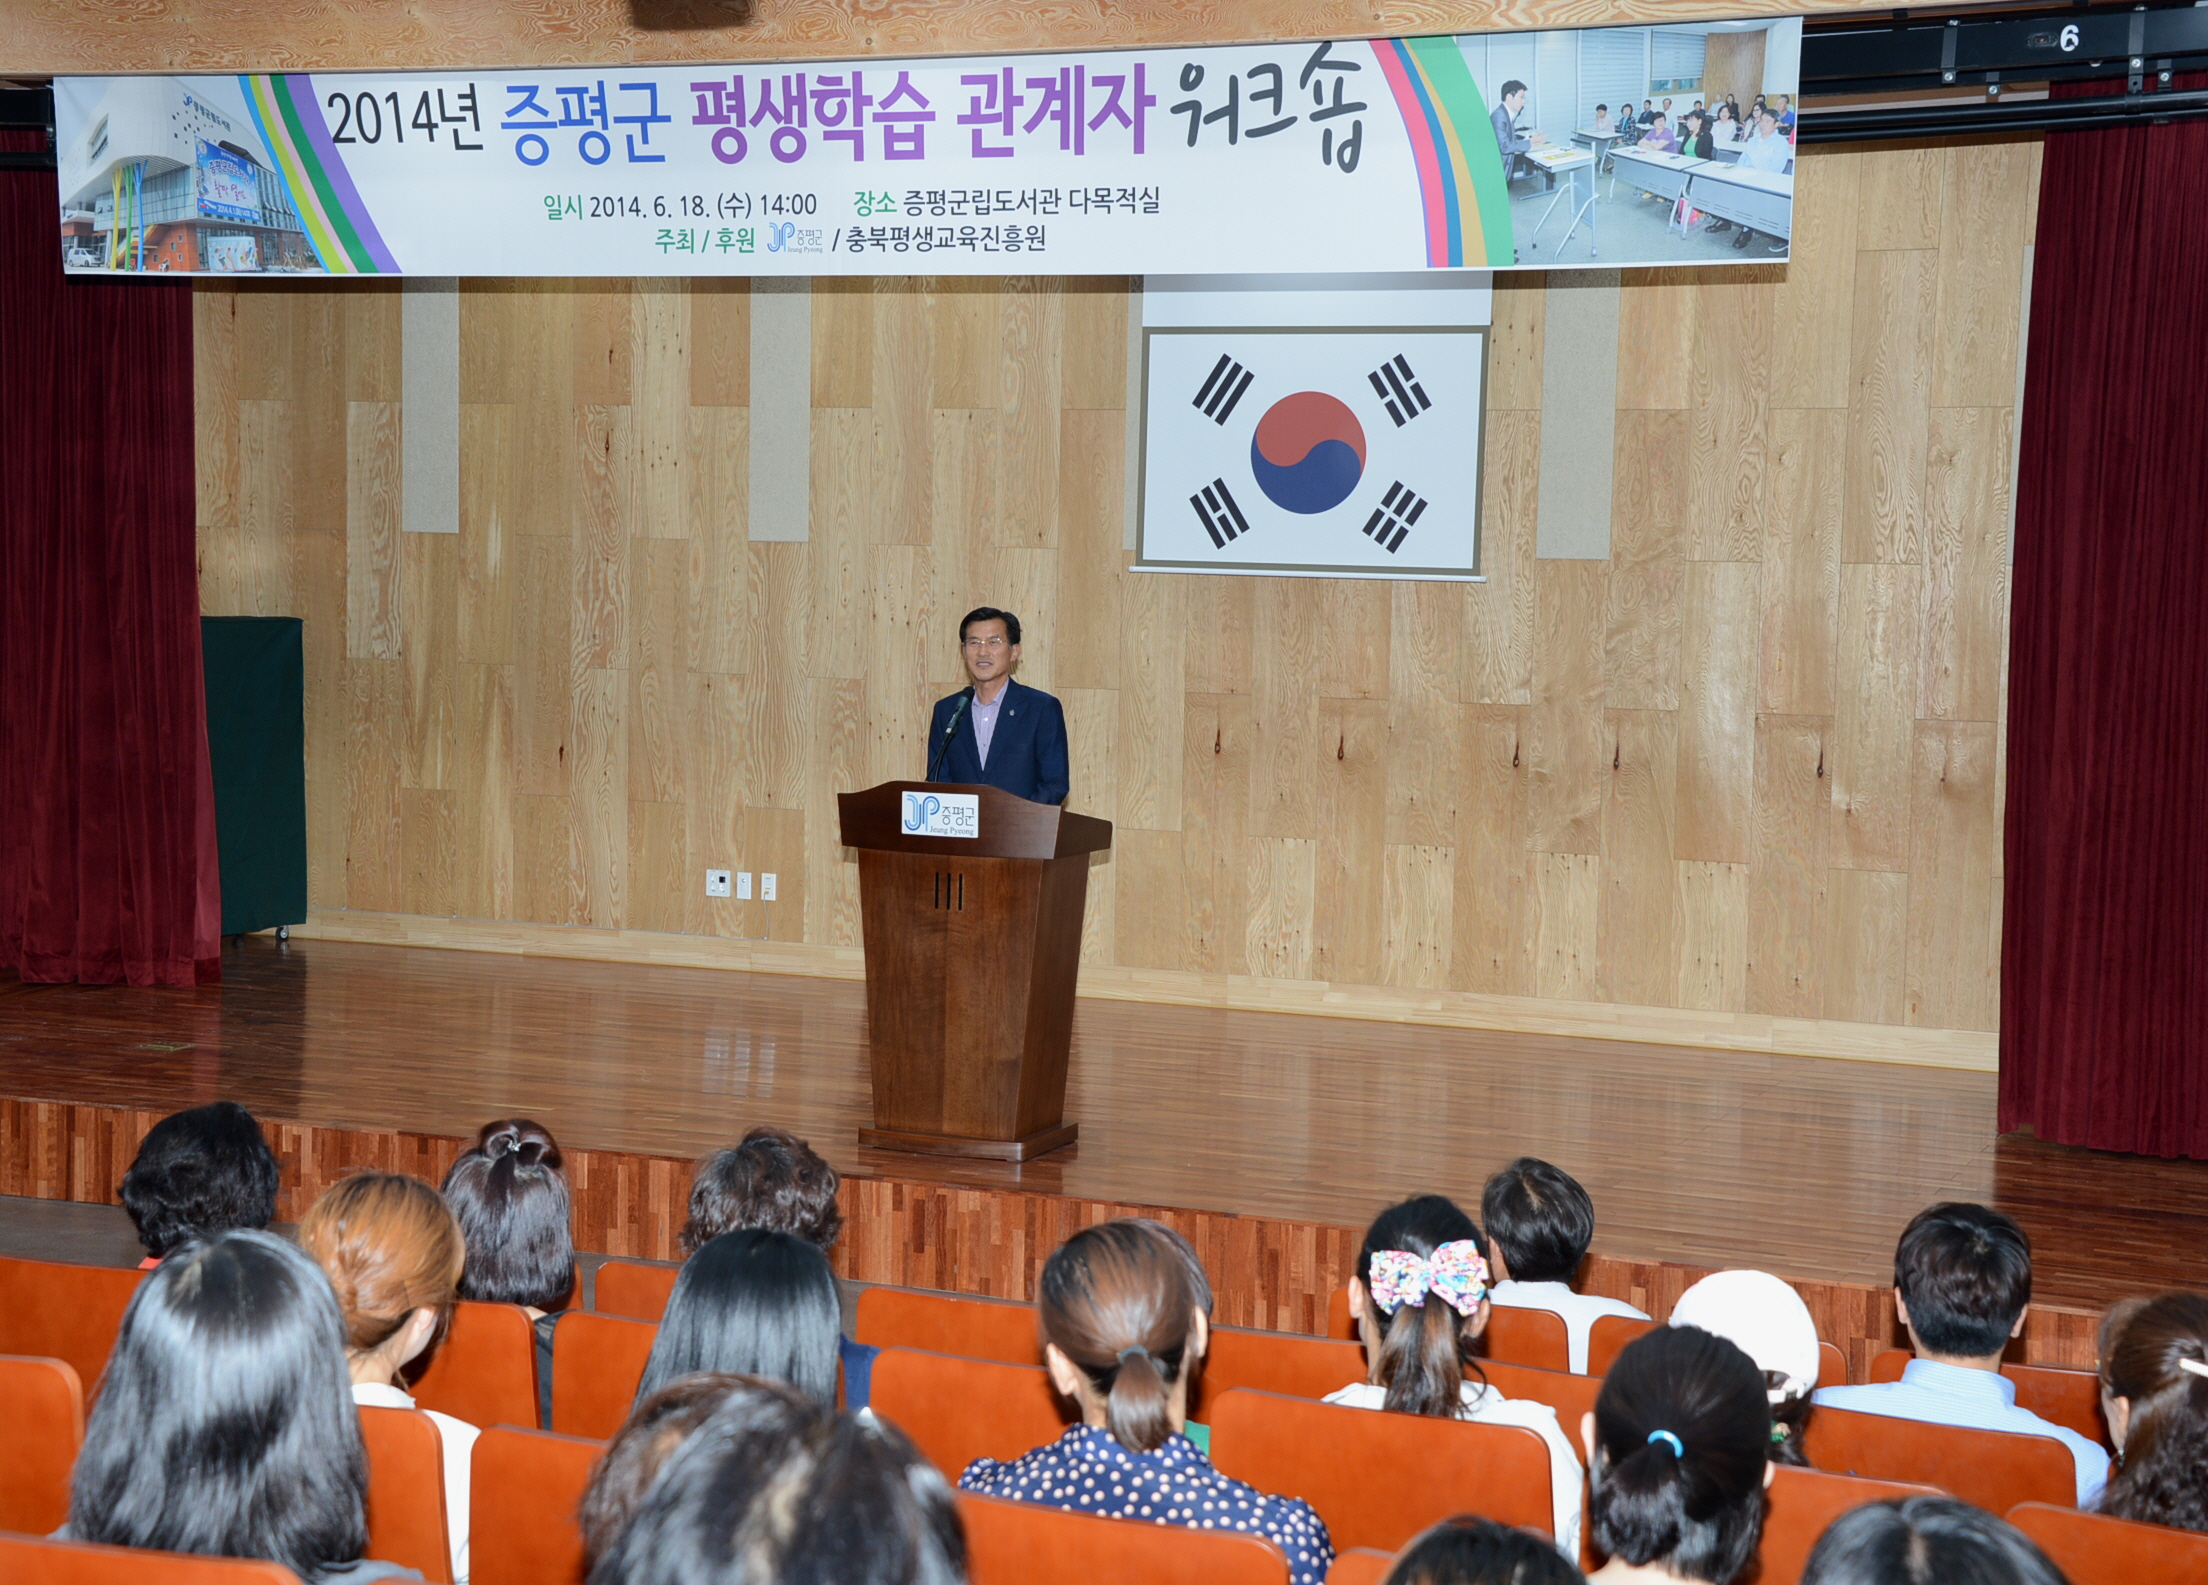 2014년 평생학습 관계자 워크숍 개최